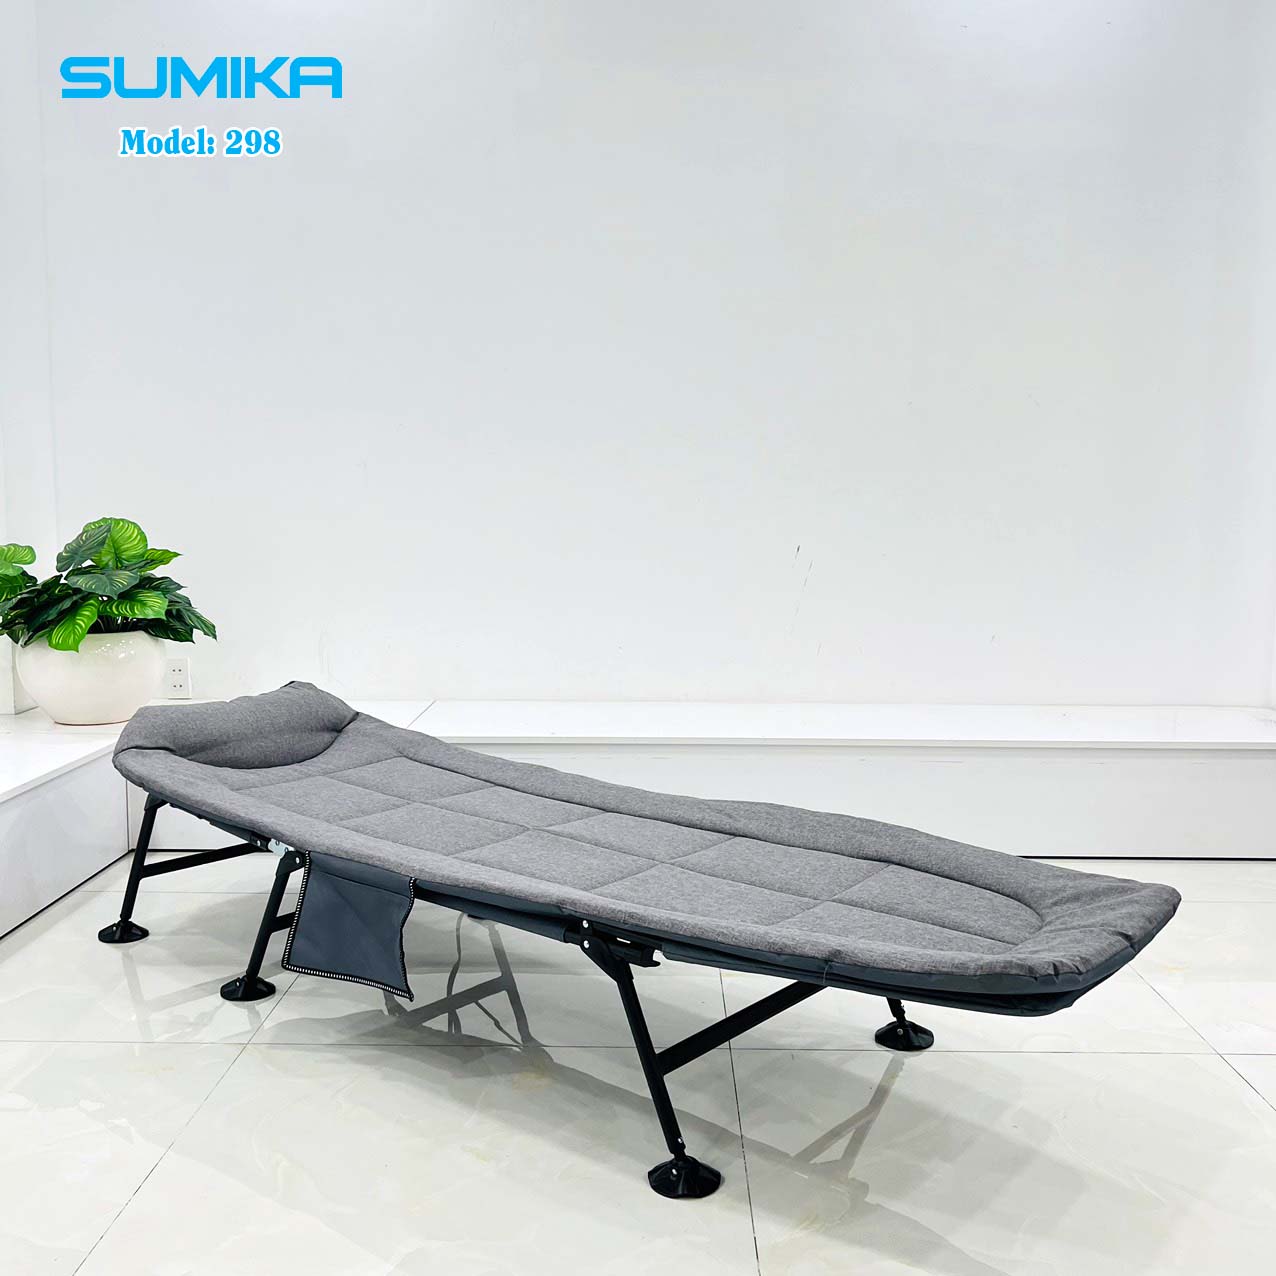 Sumika folding folding bed 298